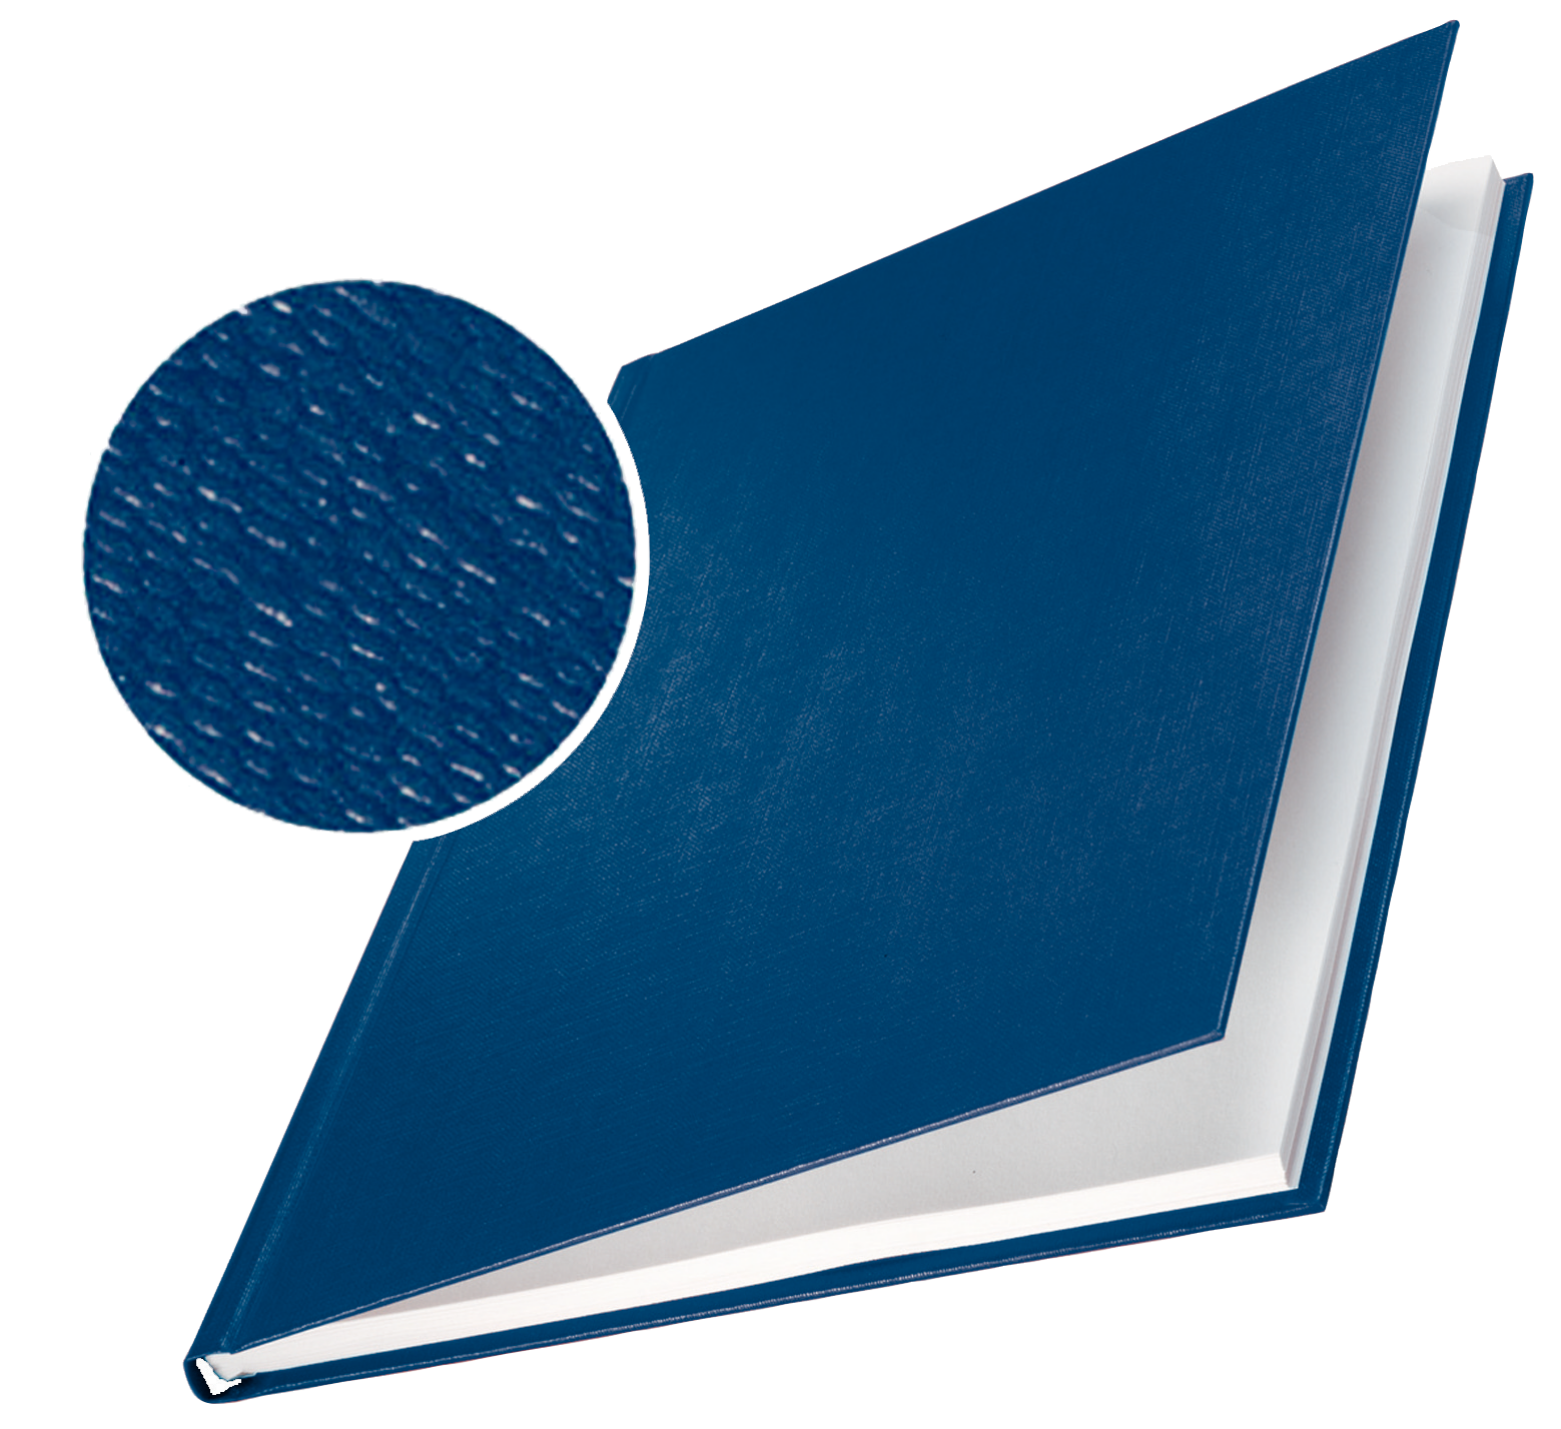 Tvrdé desky Leitz impressBIND, 106 - 140 listů, modré, balení 10 ks